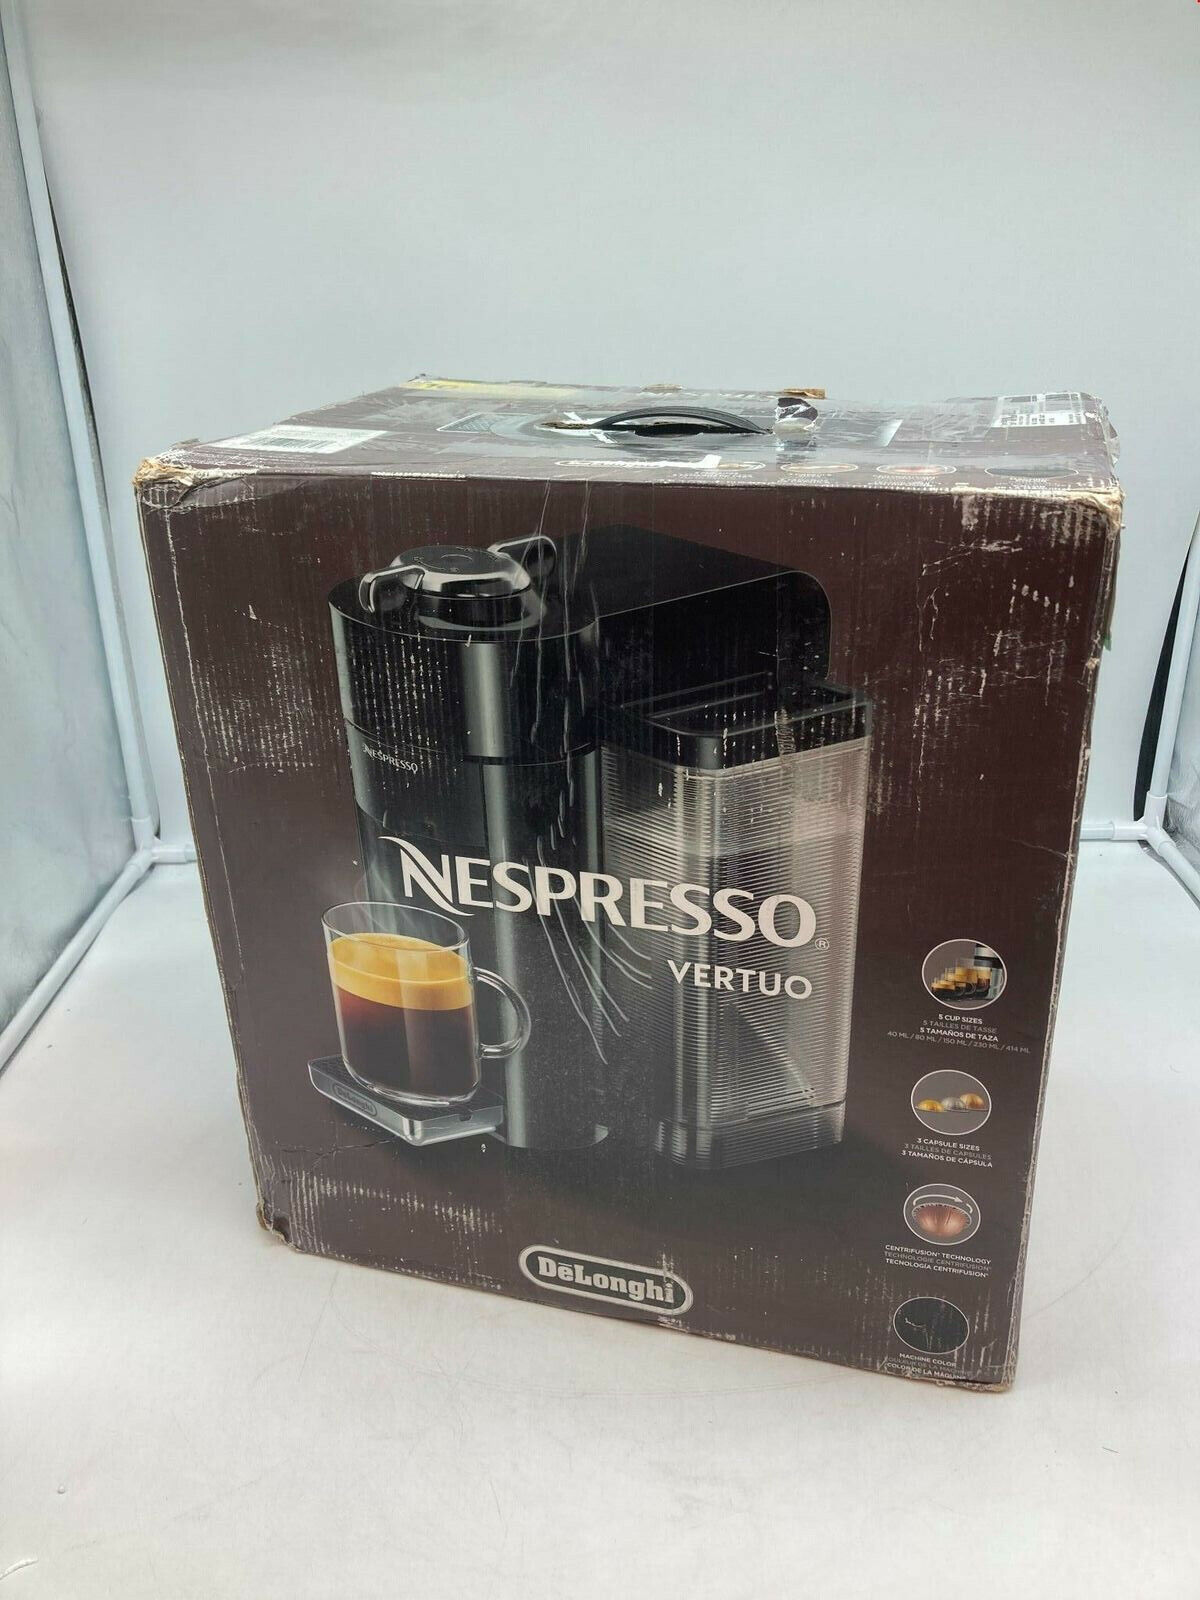 DeLonghi Nespresso Vertuo Coffee And Espresso Machine By DeLongh